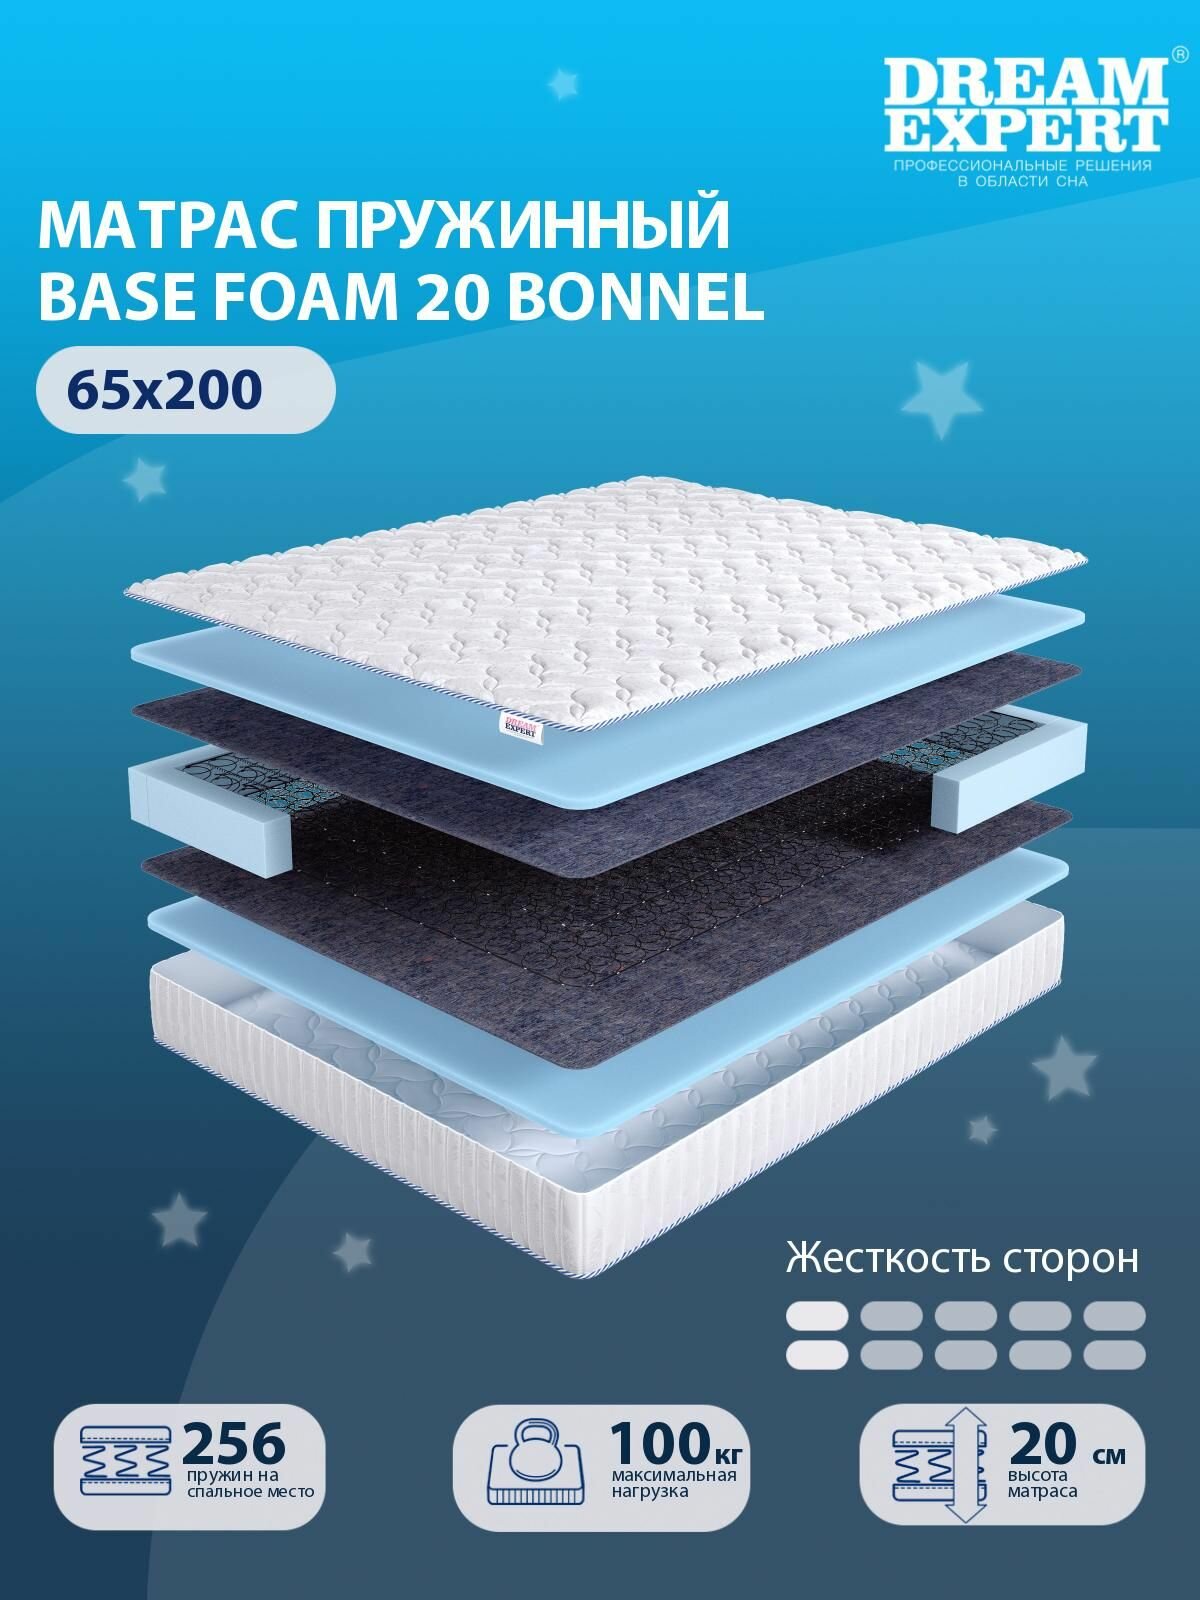 Матрас DreamExpert Base Foam 20 Bonnel низкой жесткости, детский, зависимый пружинный блок, на кровать 65x200